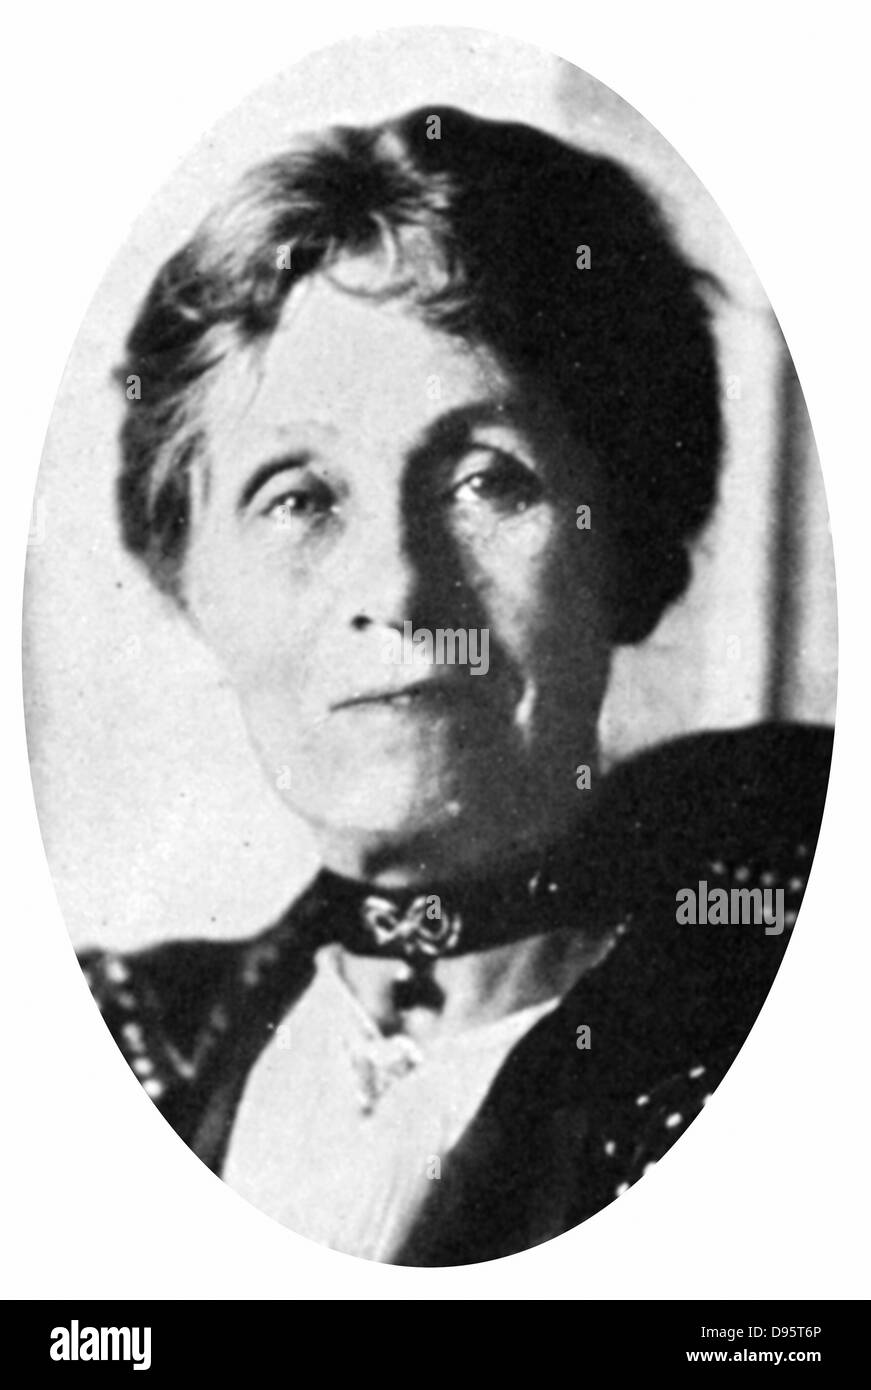 Mrs emmeline pankhurst 1857 1928 Black and White Stock Photos & Images ...